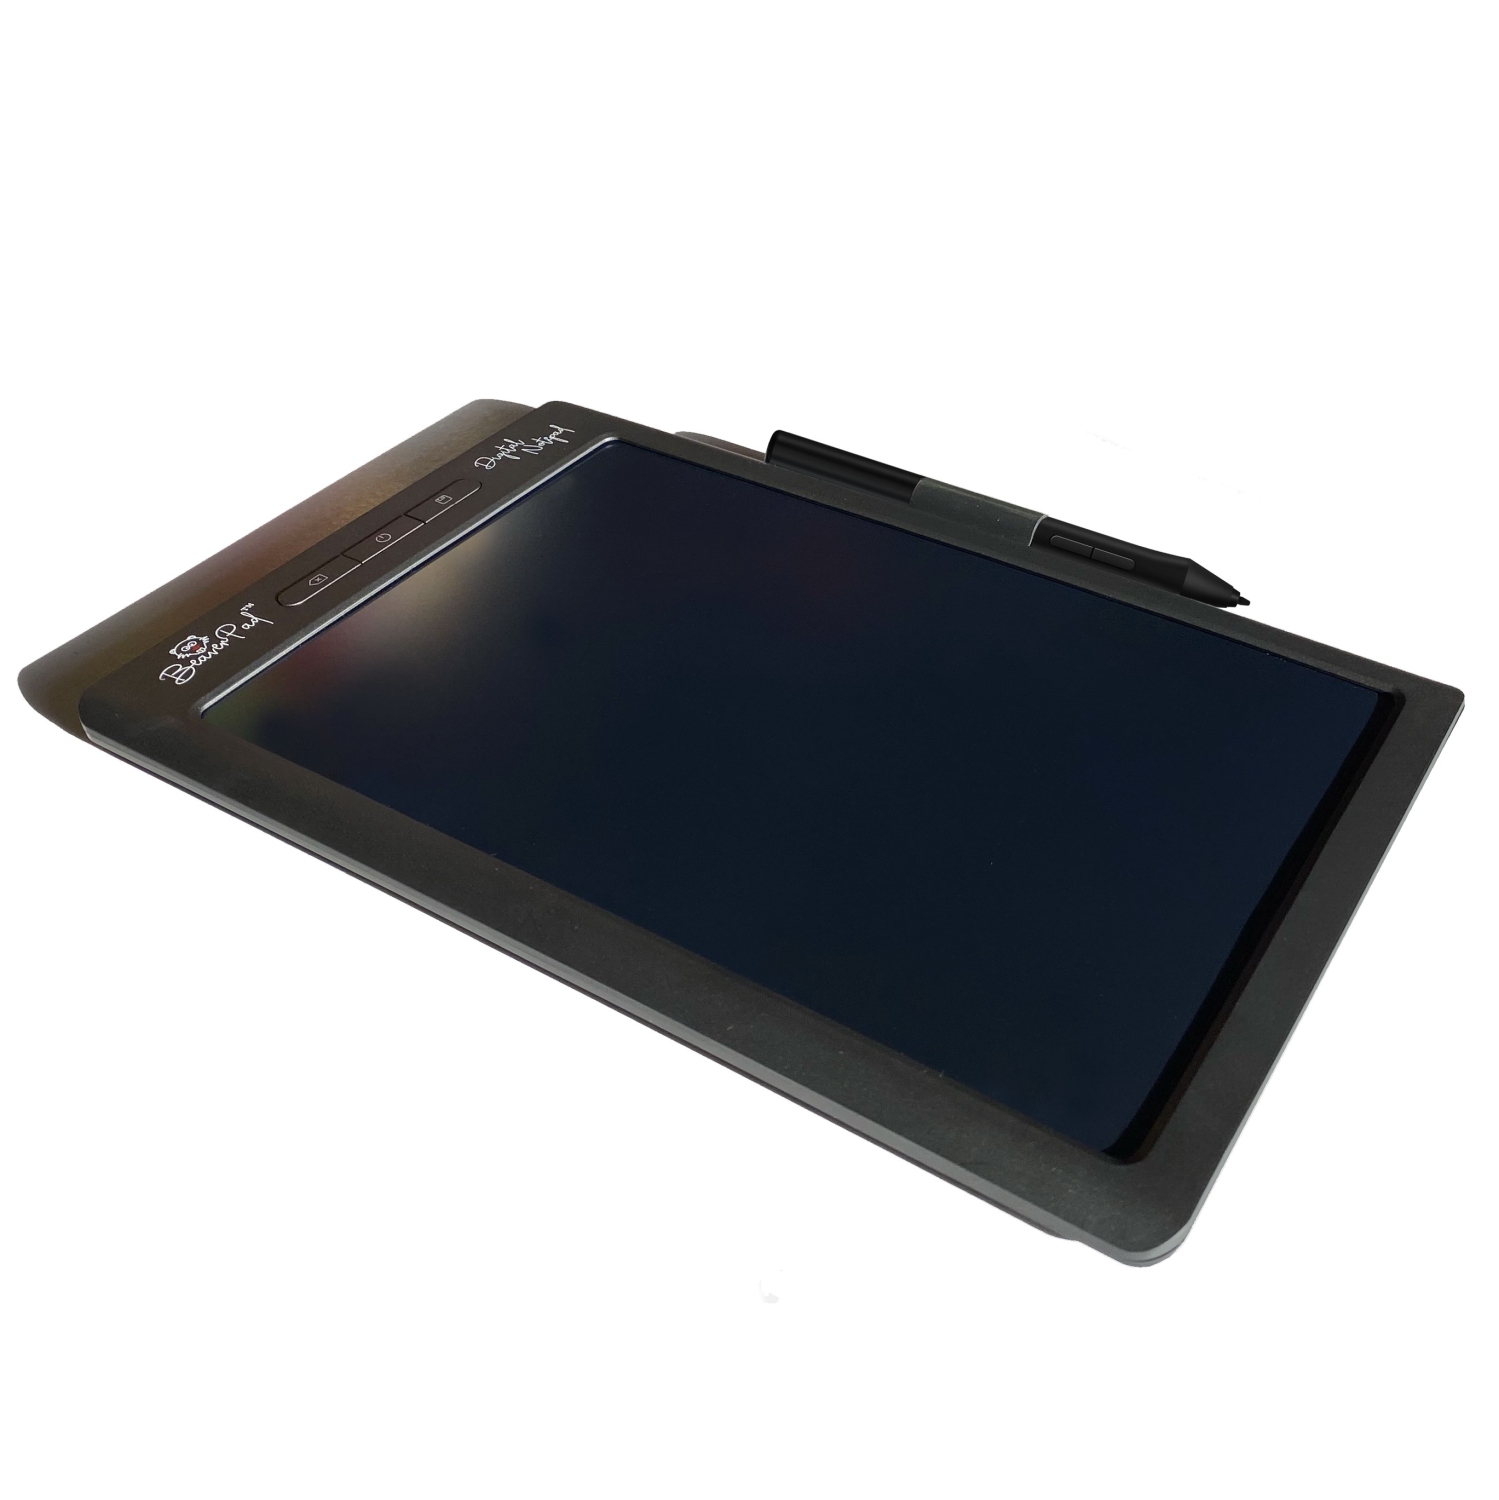 BeaverPad Tablette d'écriture LCD (eWriter) et tablette graphique